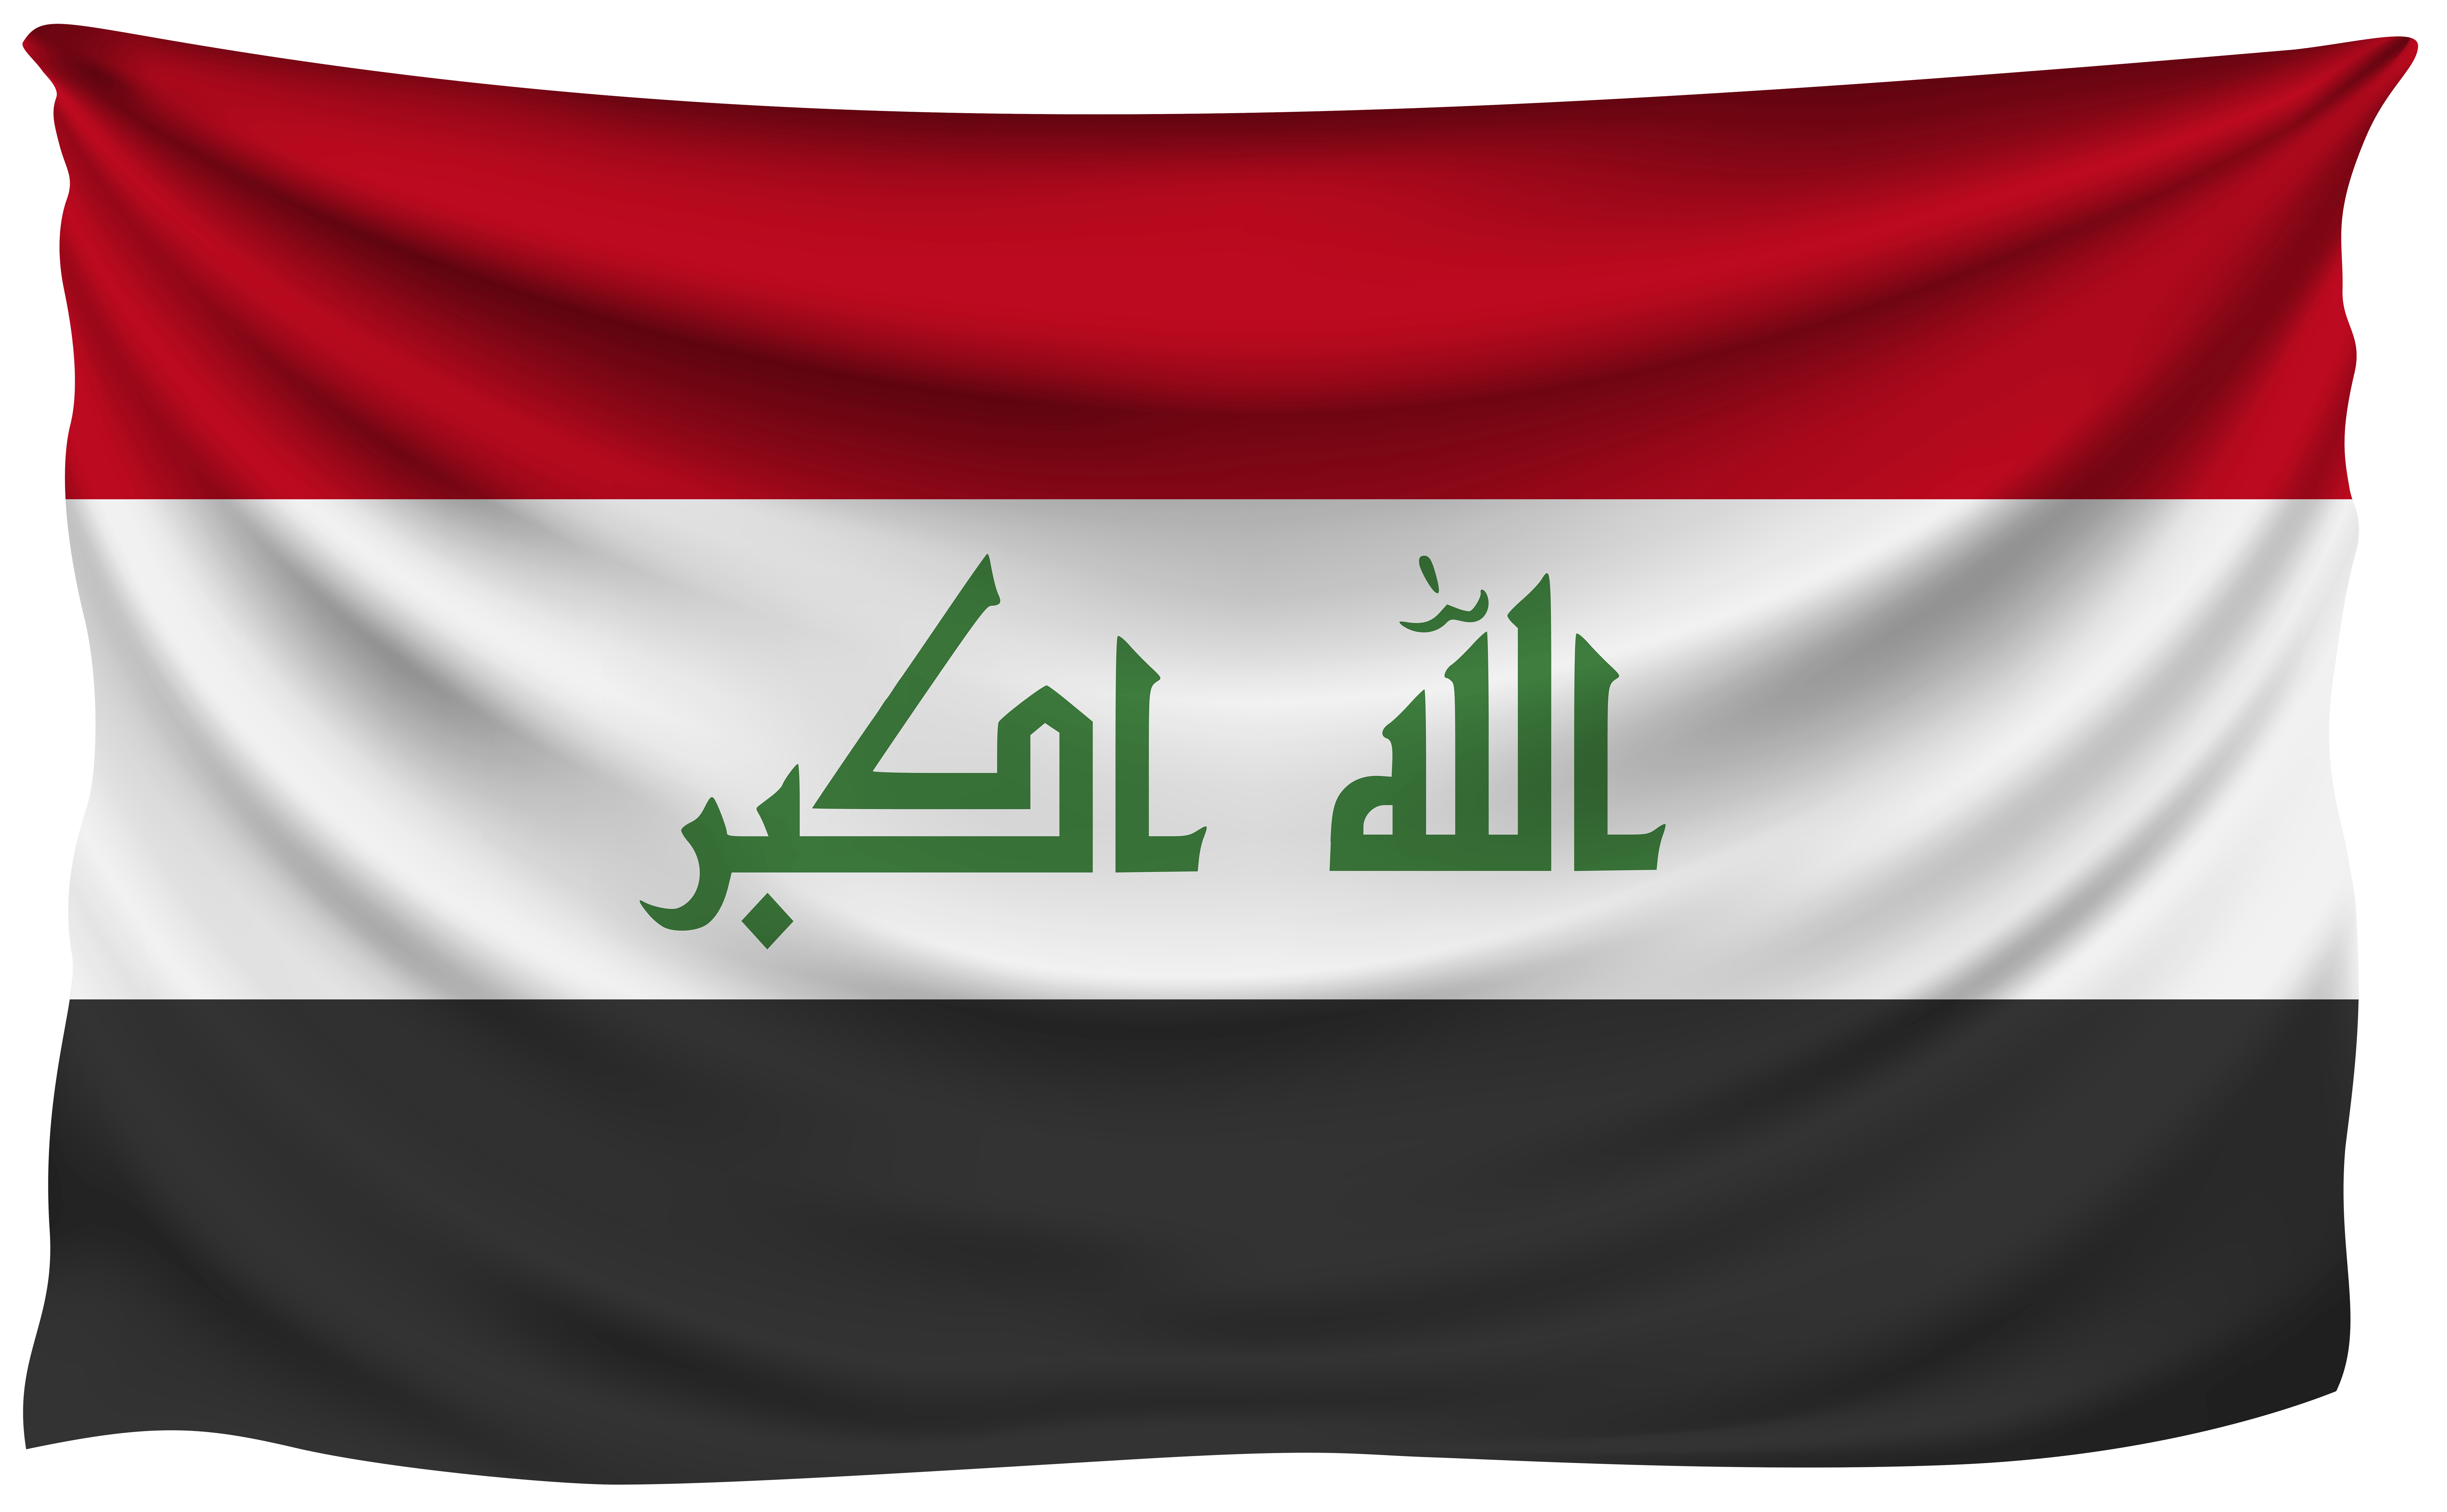 Iraq Logo - iraq flag | iraq flag علم العراق in 2019 | Iraq flag, Flag, National ...